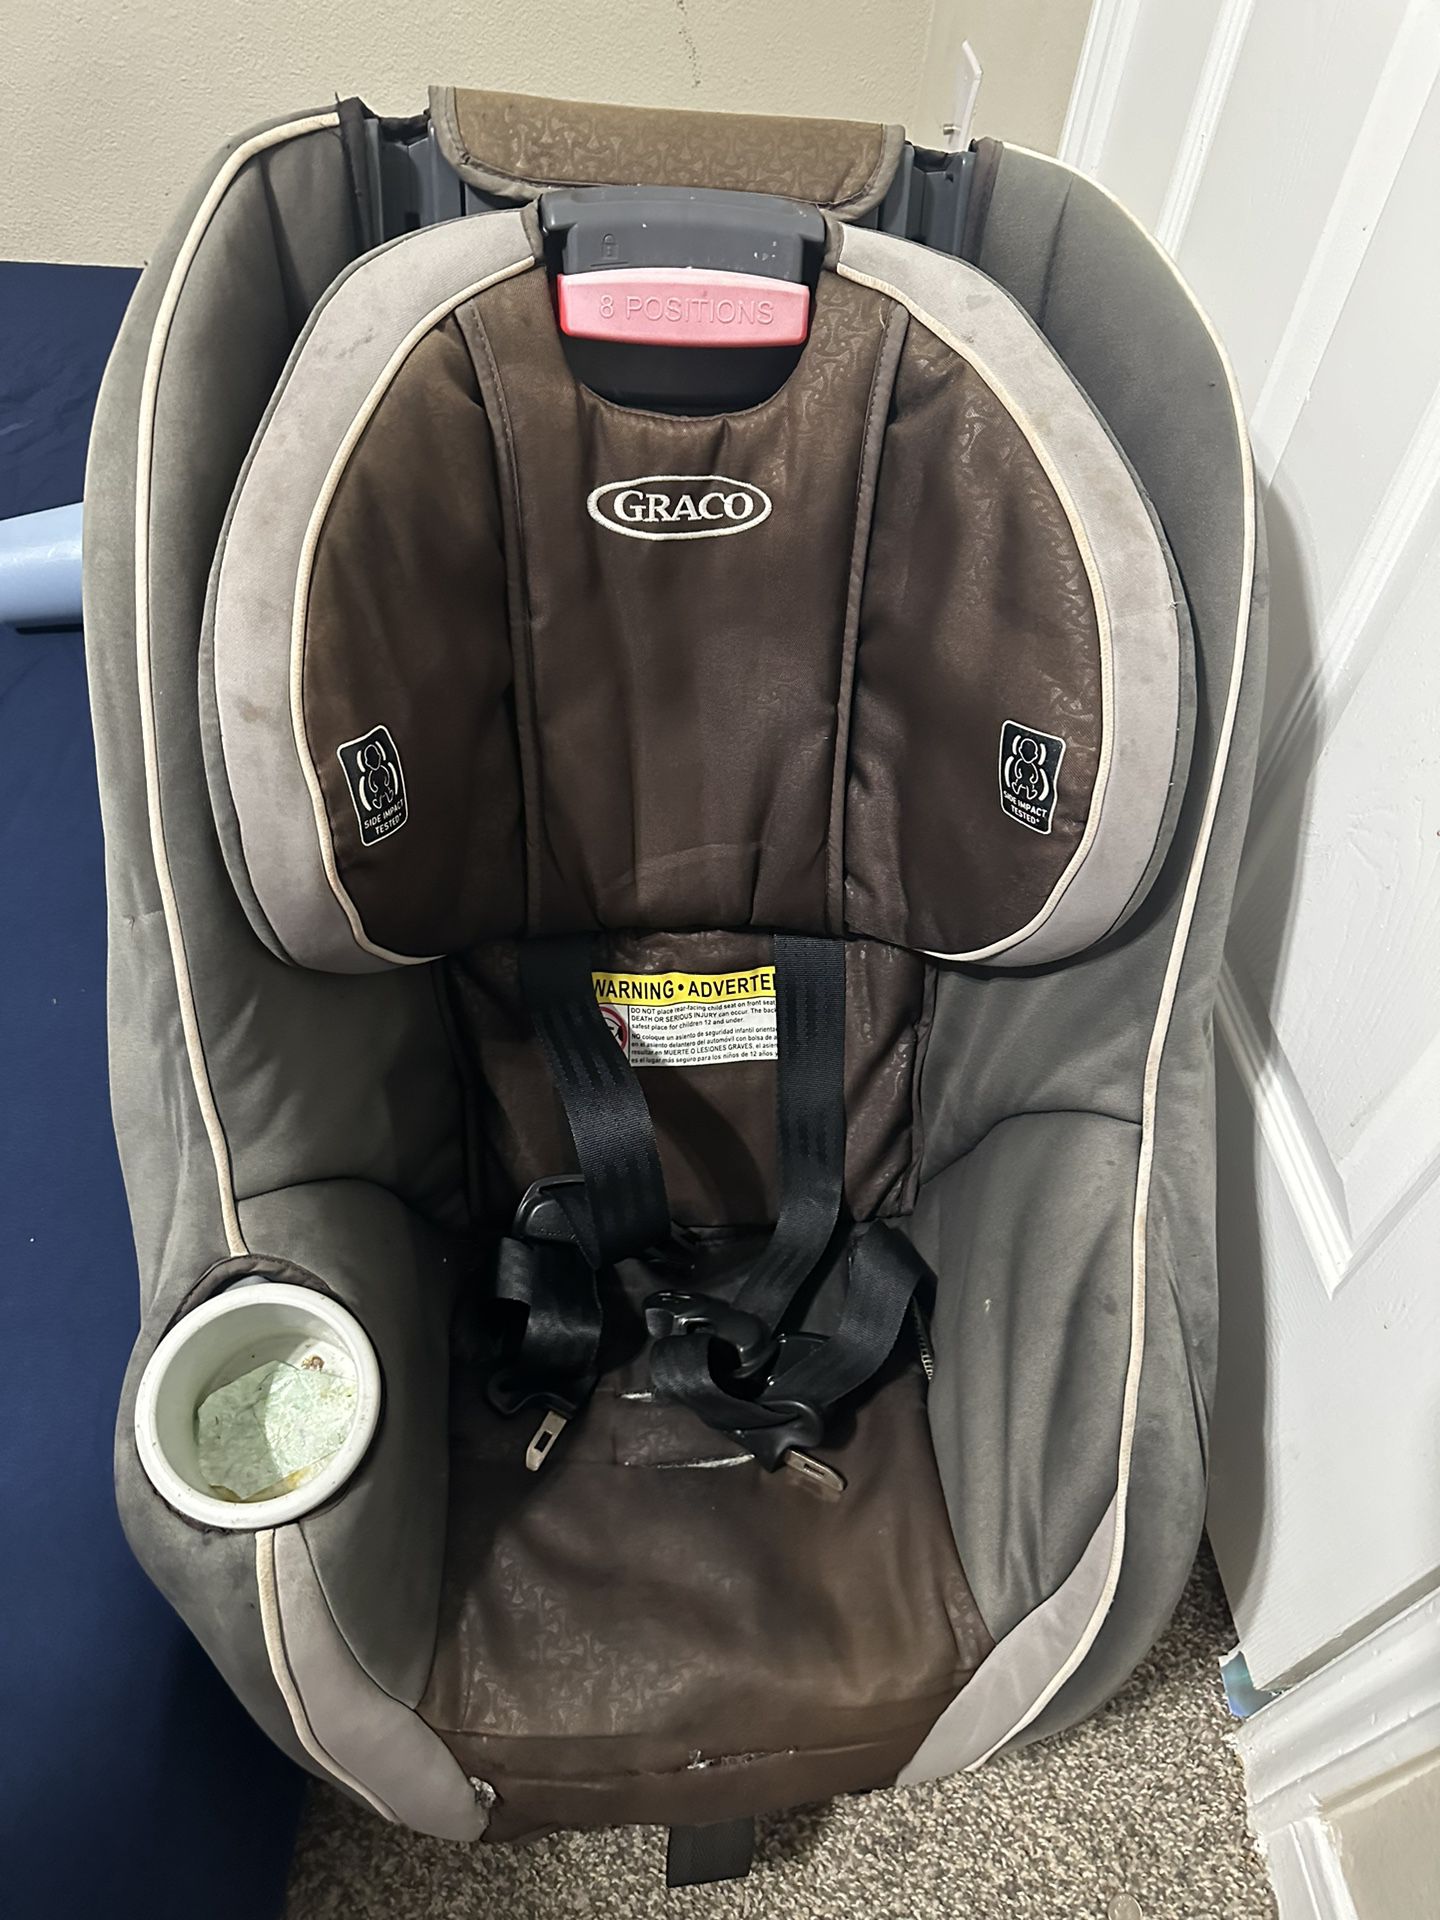 Free Toddler Car seat 